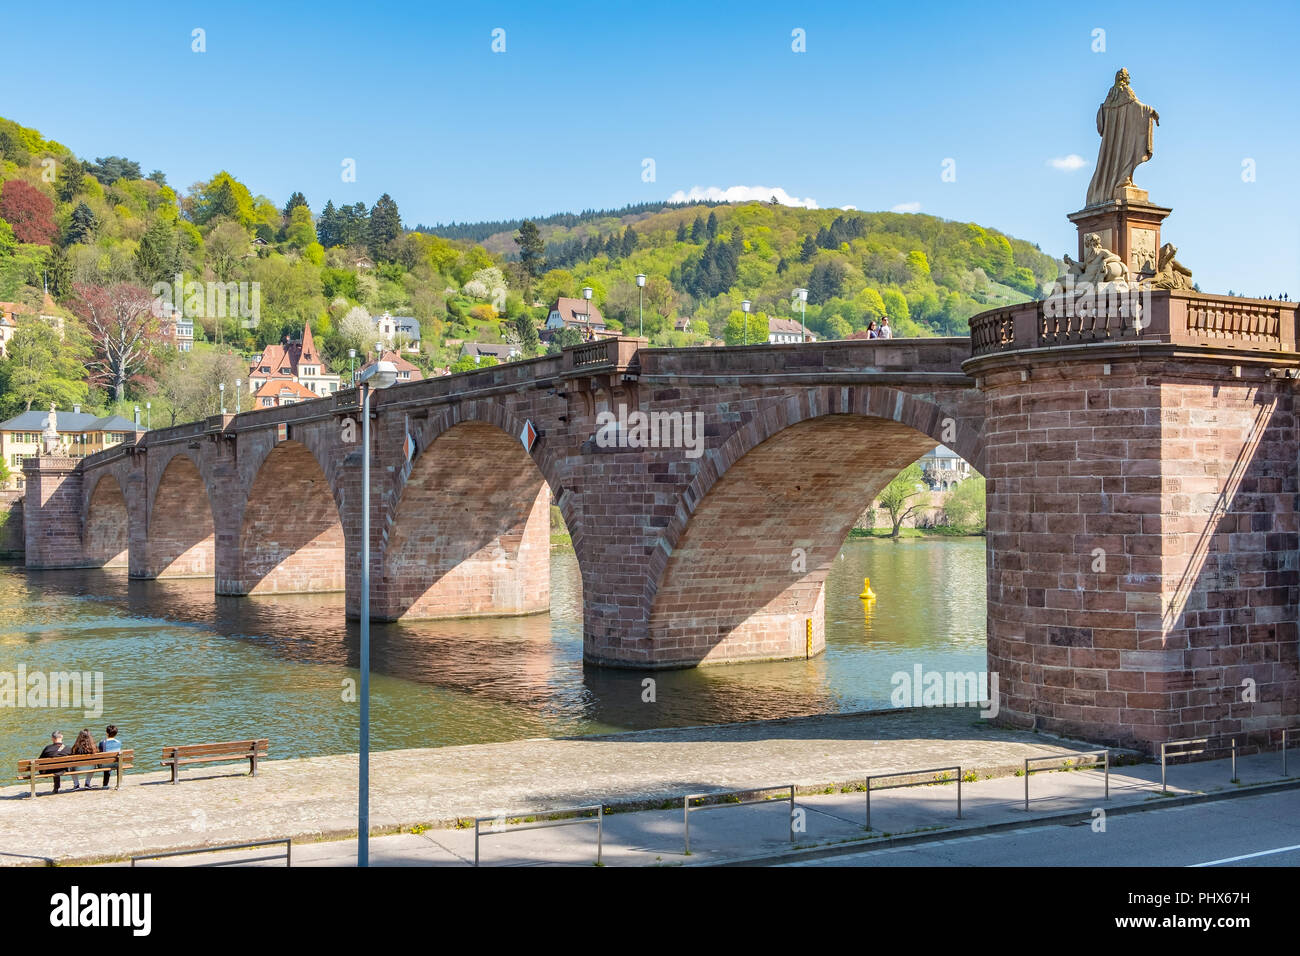 The Old Bridge over the River Neckar in Heidelberg Germany. Stock Photo